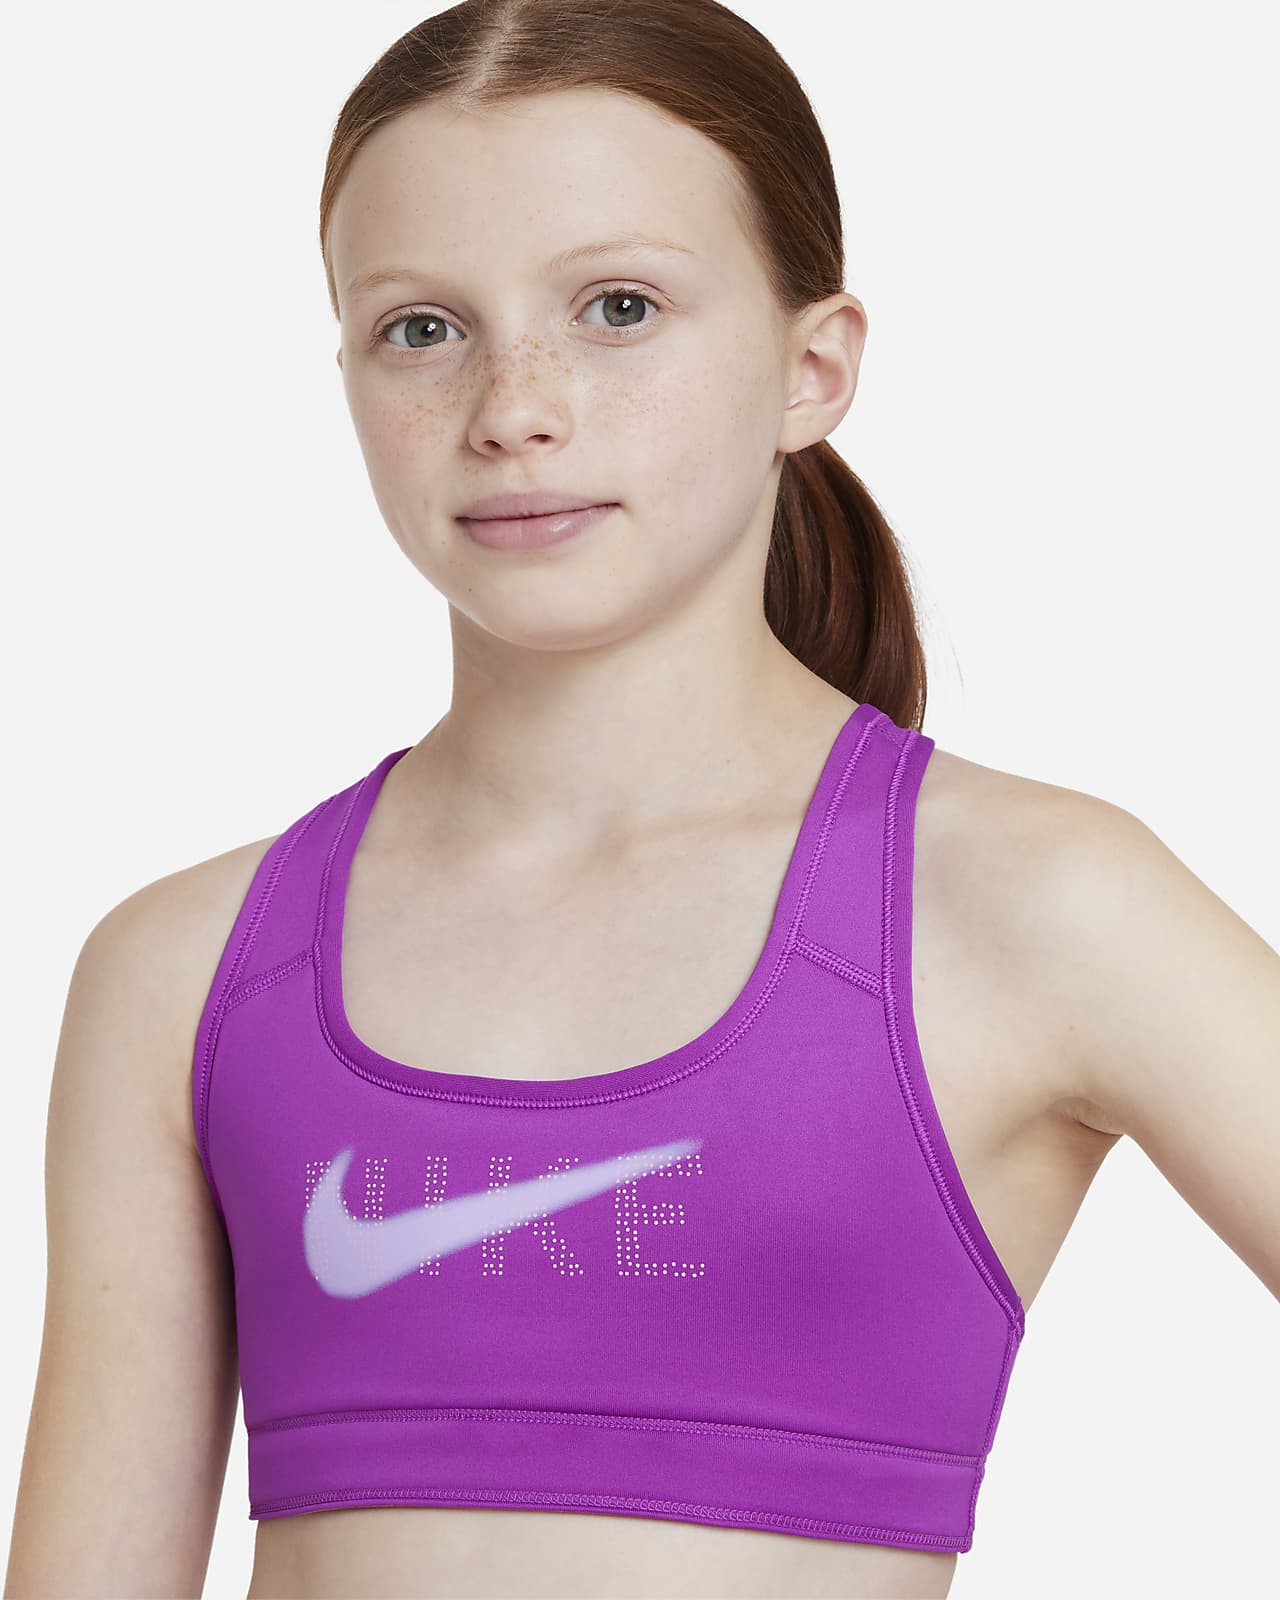 สปอร์ตบราเด็กโตใส่ได้ 2 ด้าน Nike Swoosh (หญิง)